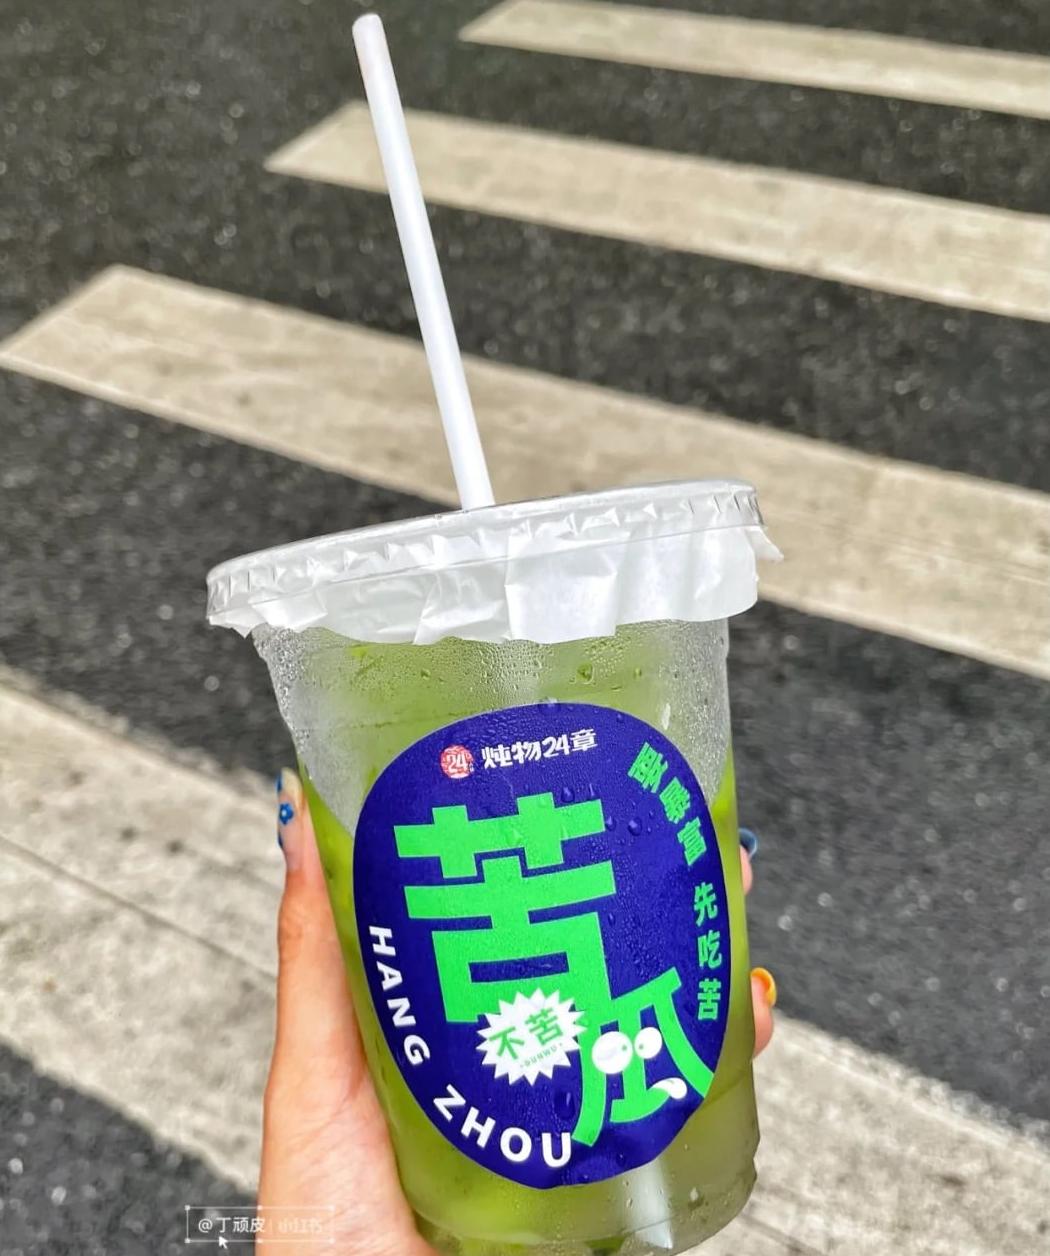 Thức uống này thuộc thực đơn mùa hè của chuỗi cửa hàng Dunwu24.